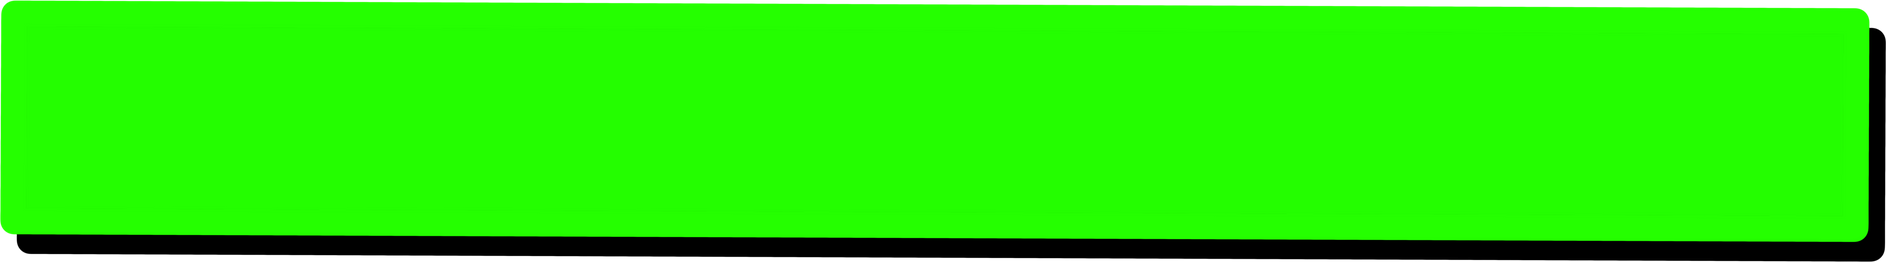 Green Rectangle Blank Dialog Button